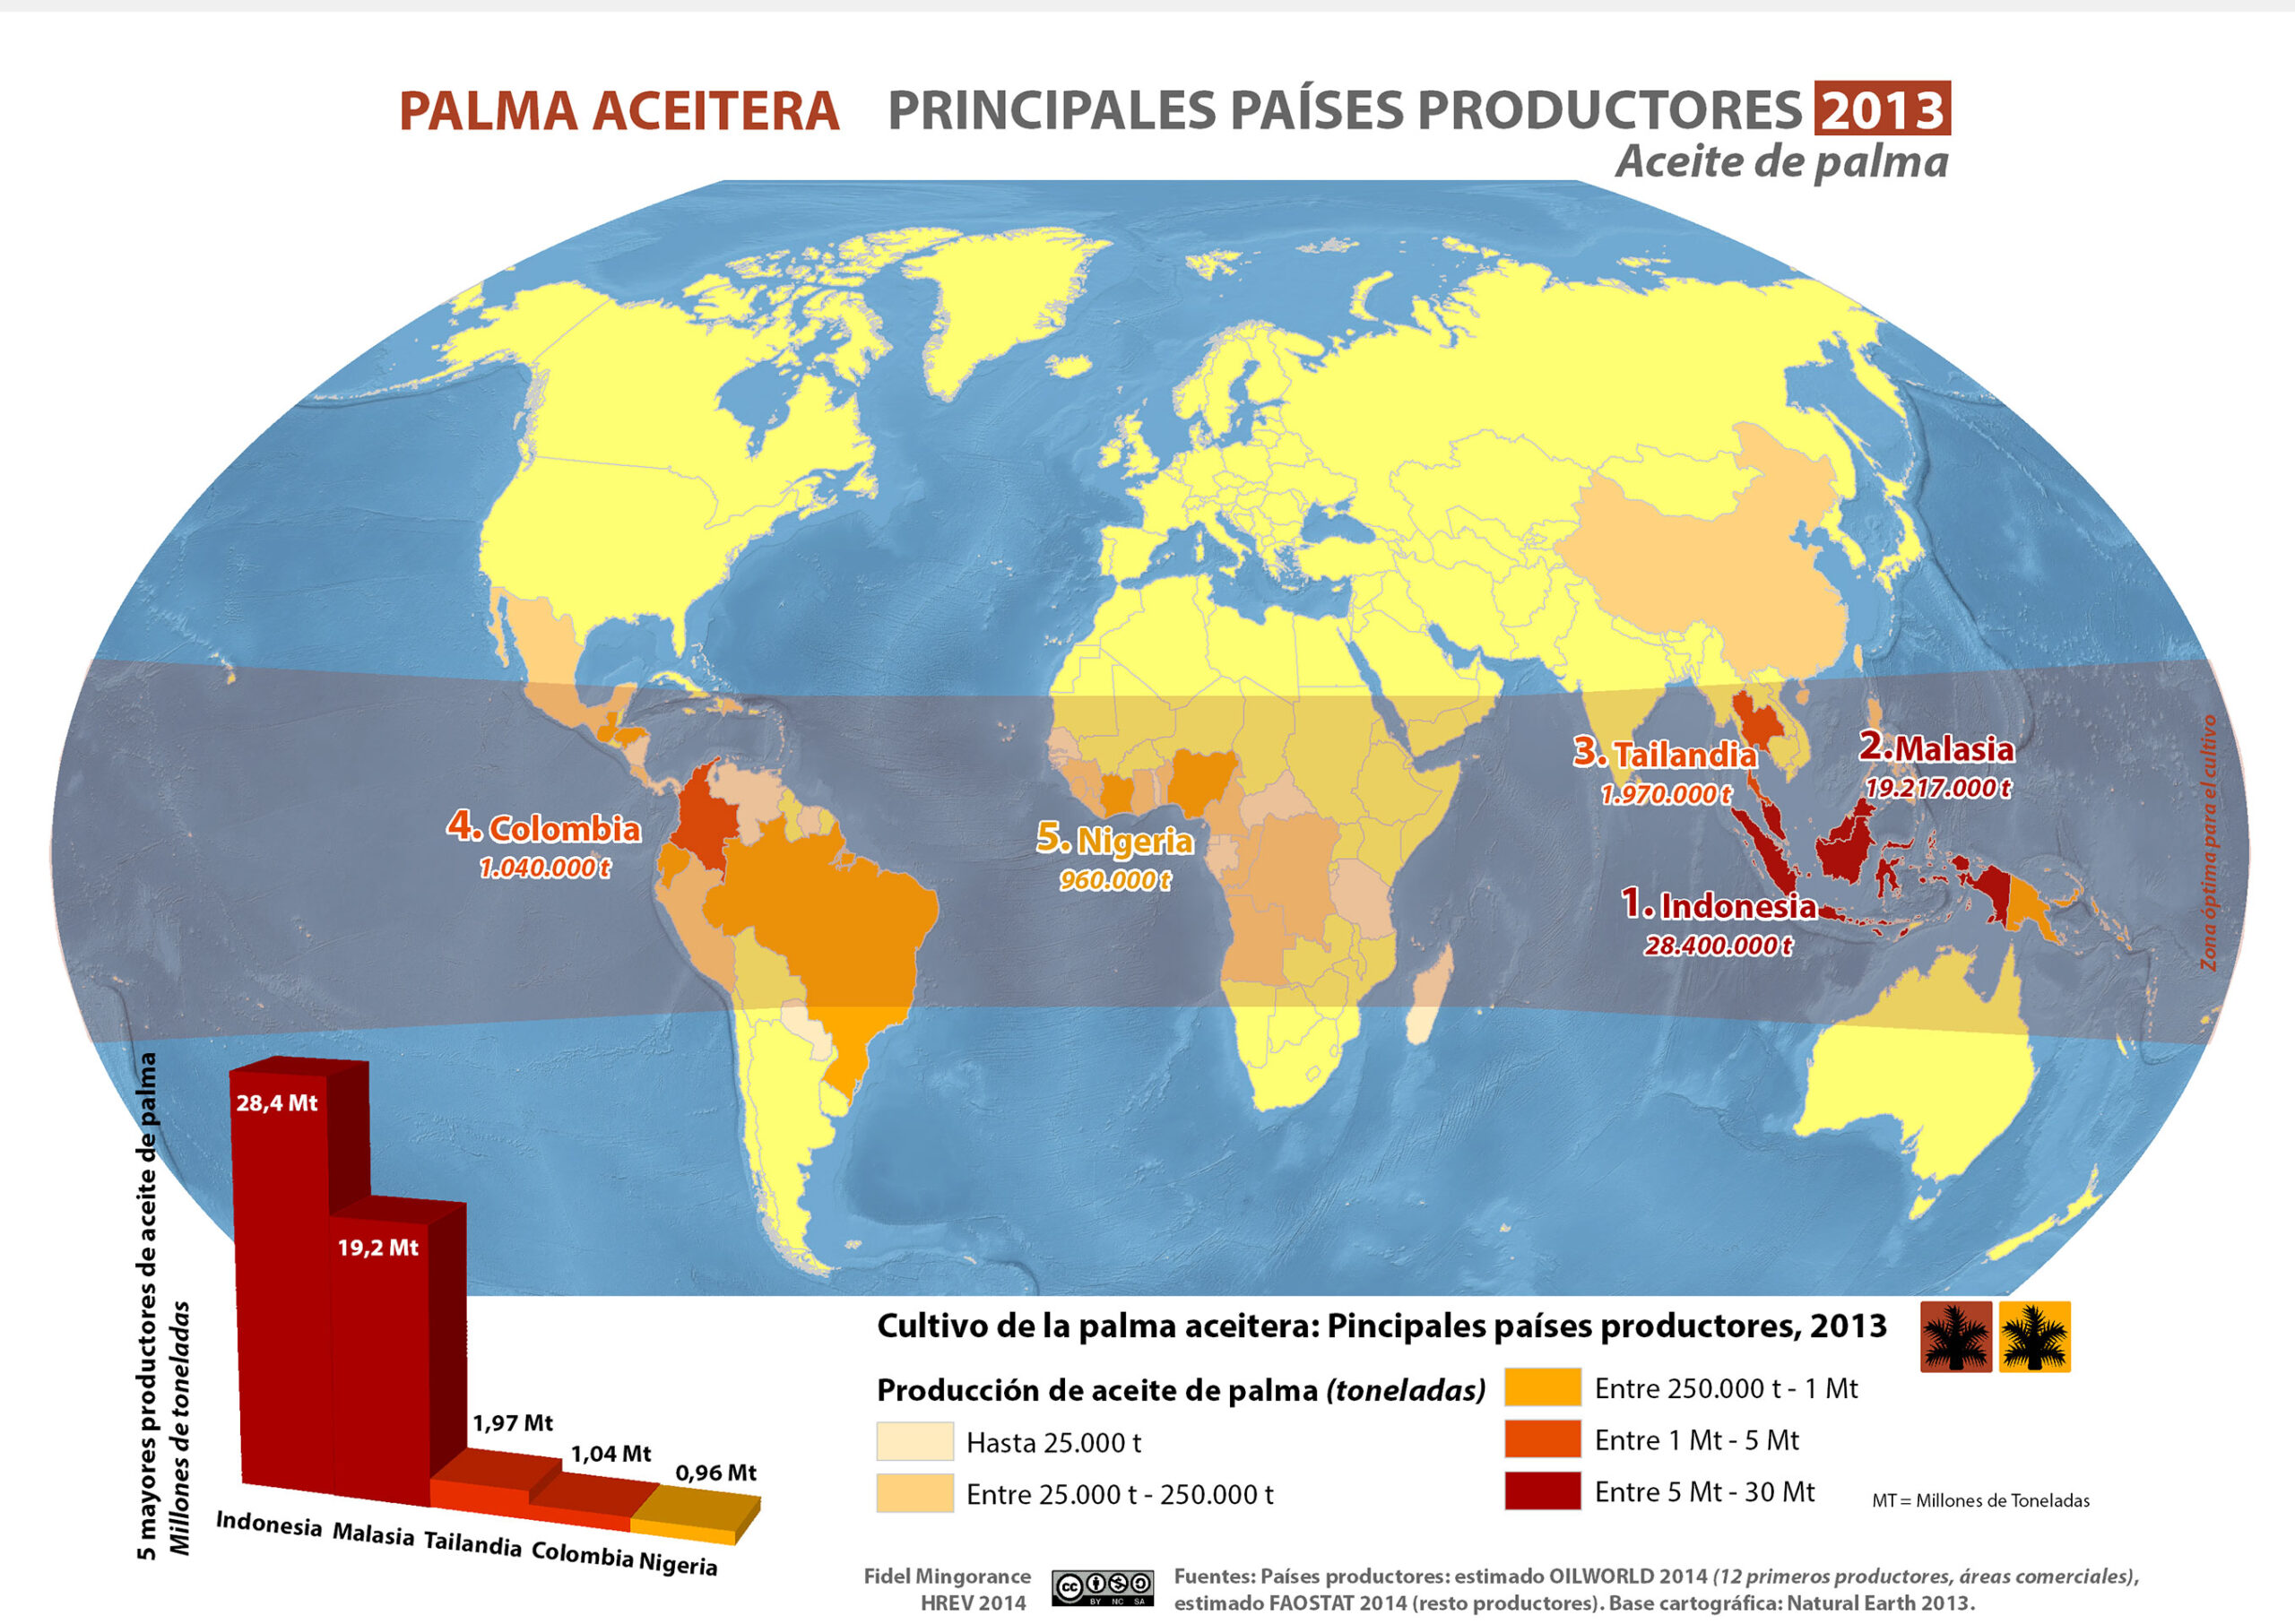 Plantaciones de palma aceitera